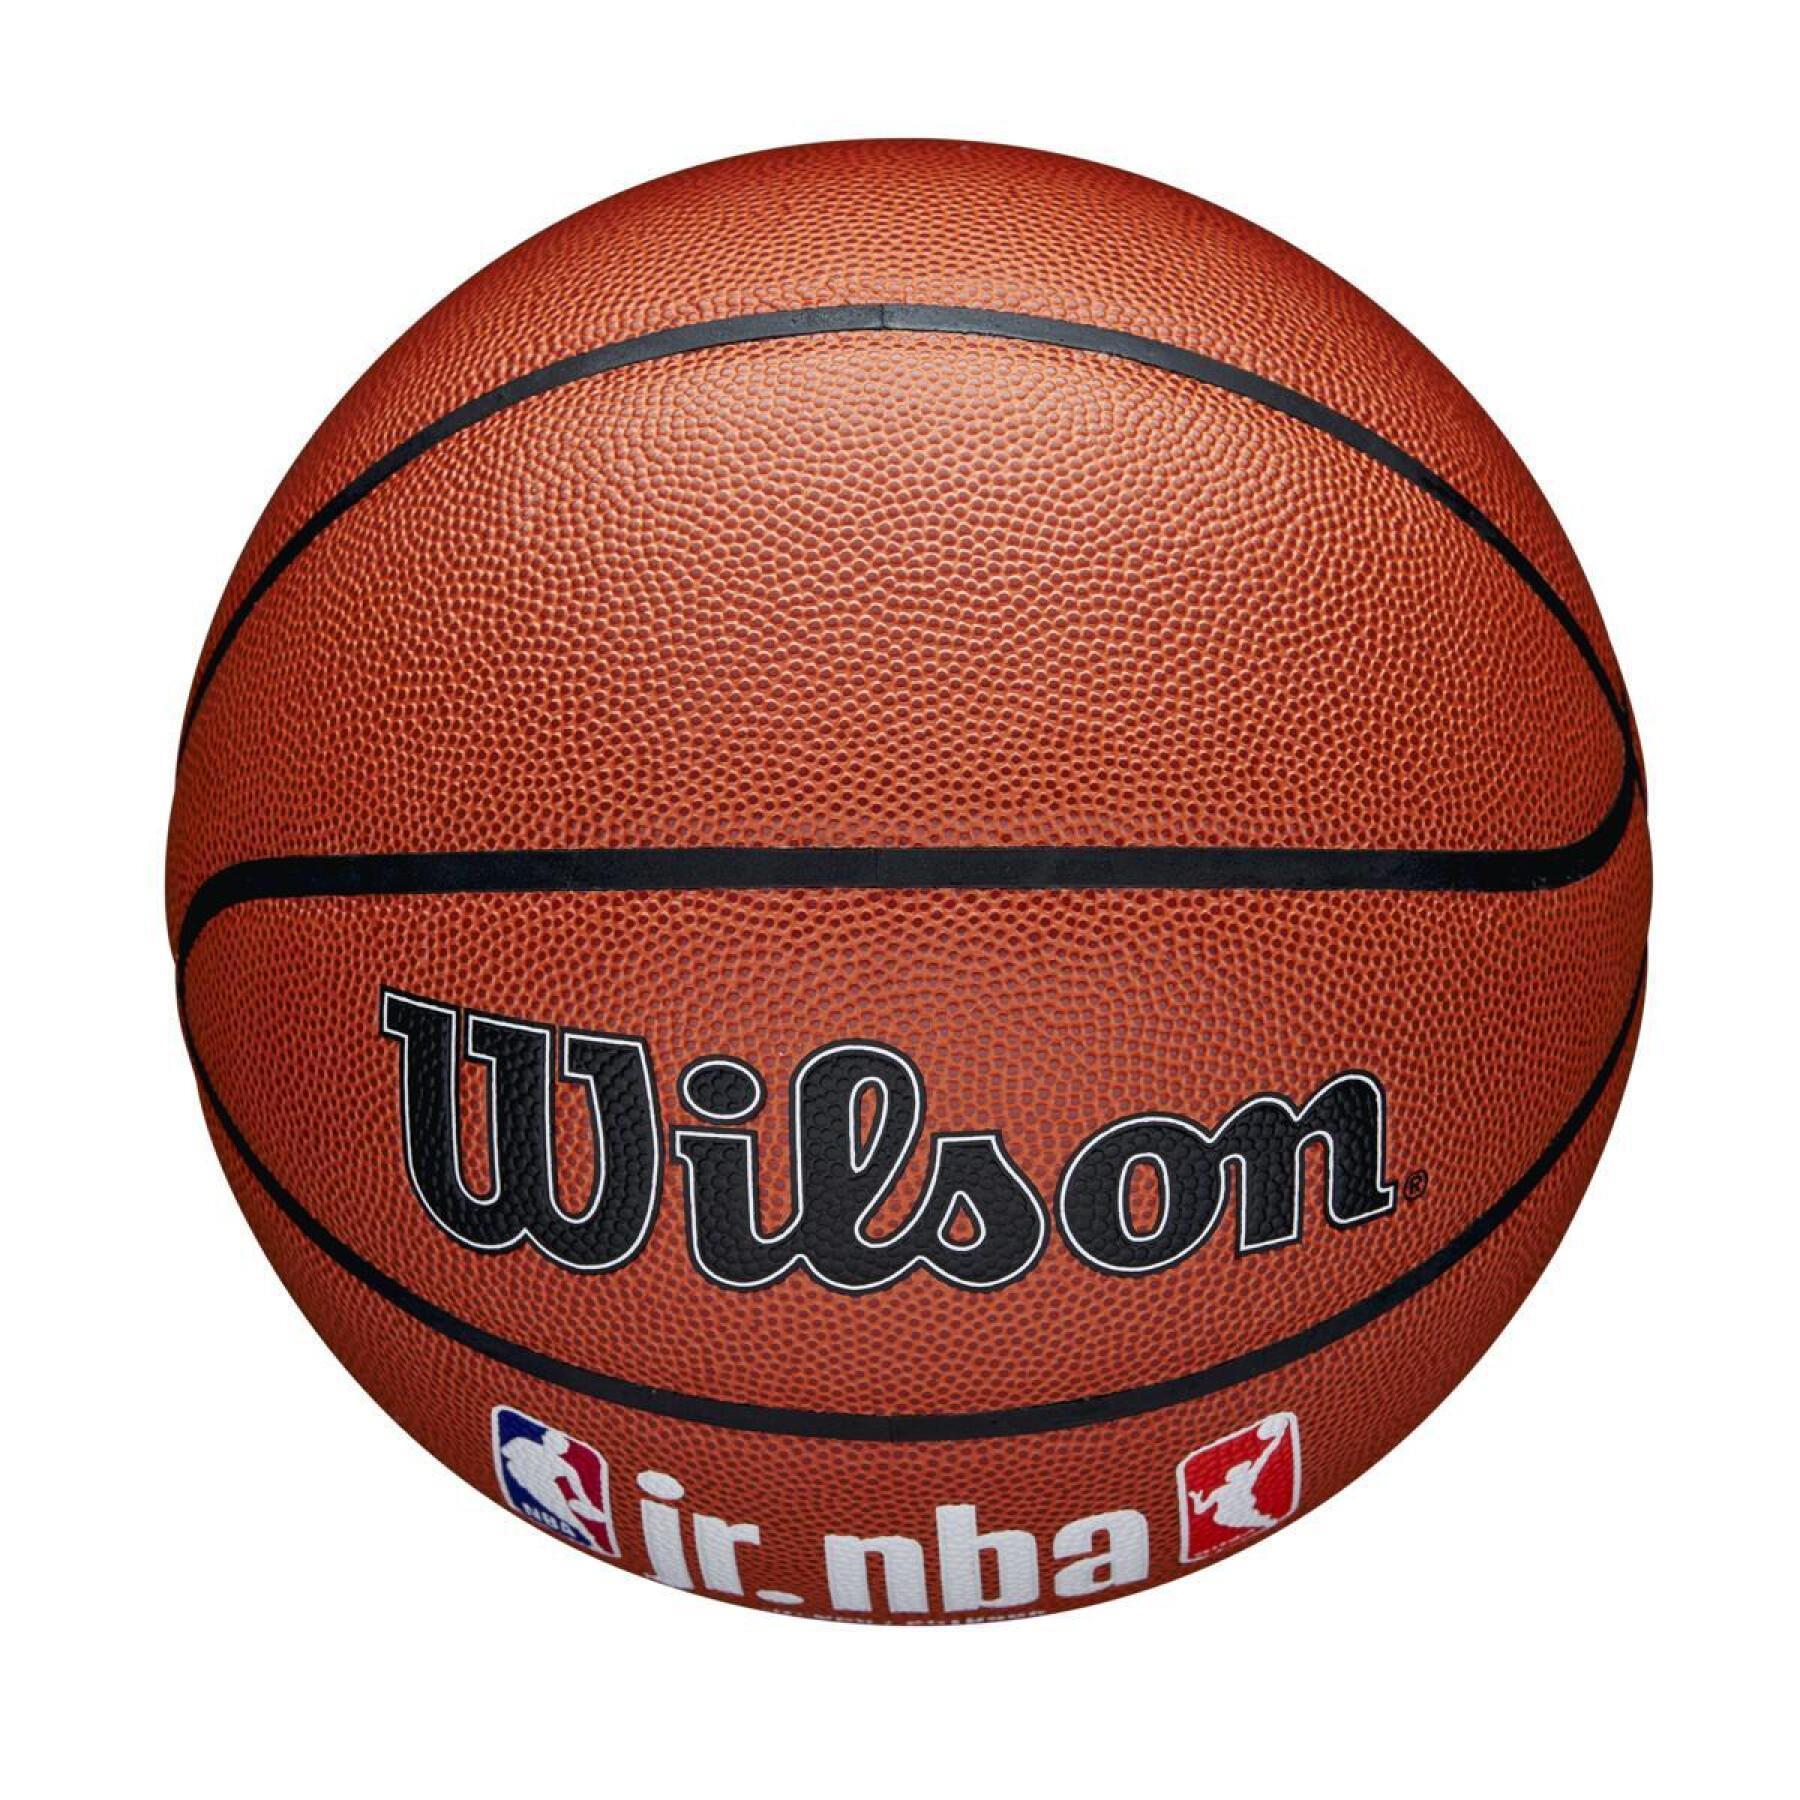 Balloon Wilson NBA Fam